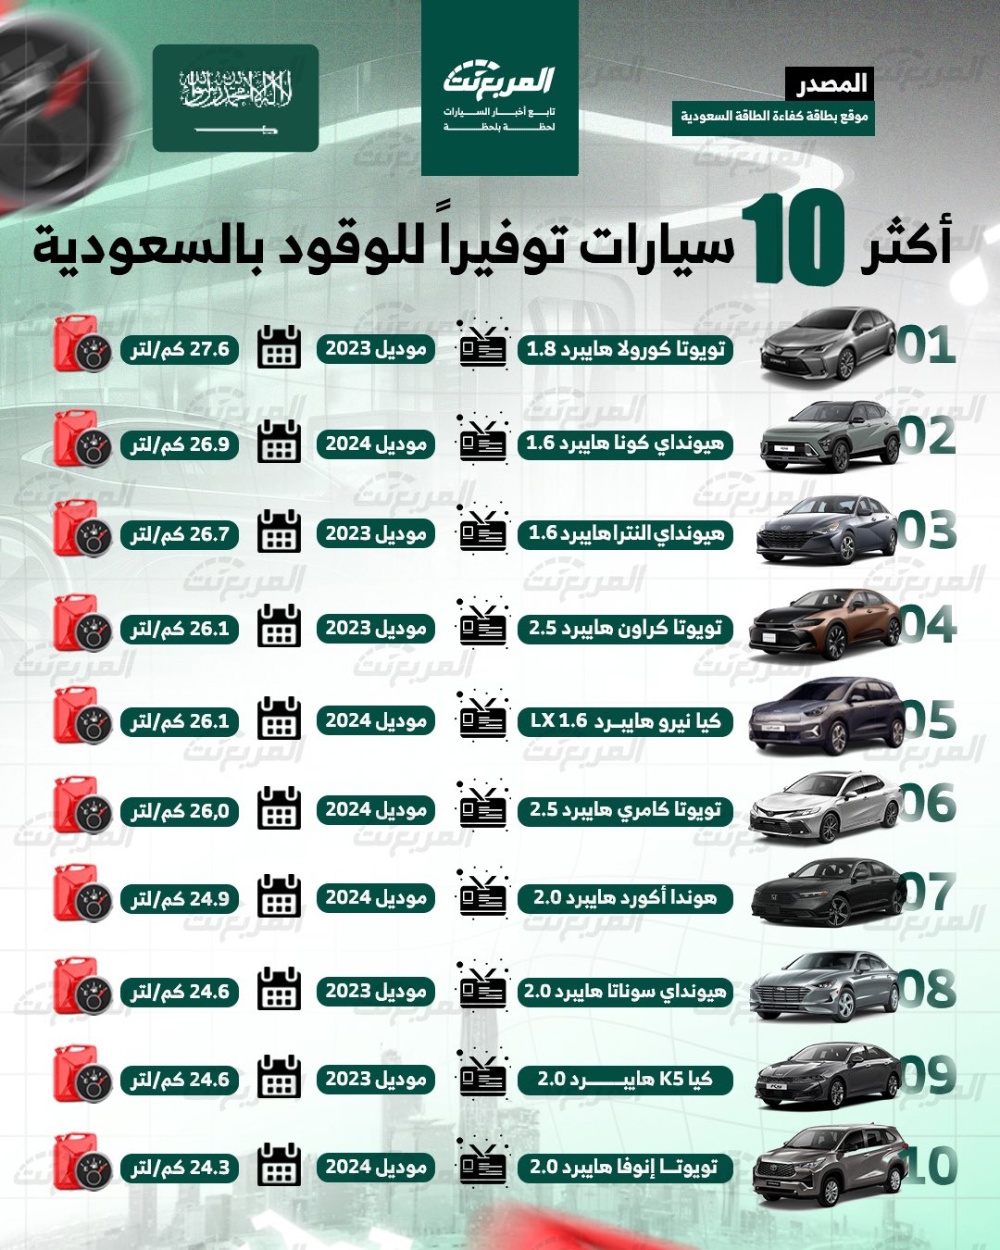 أكثر 10 سيارات توفيرًا للوقود في السعودية .. بالأرقام 1